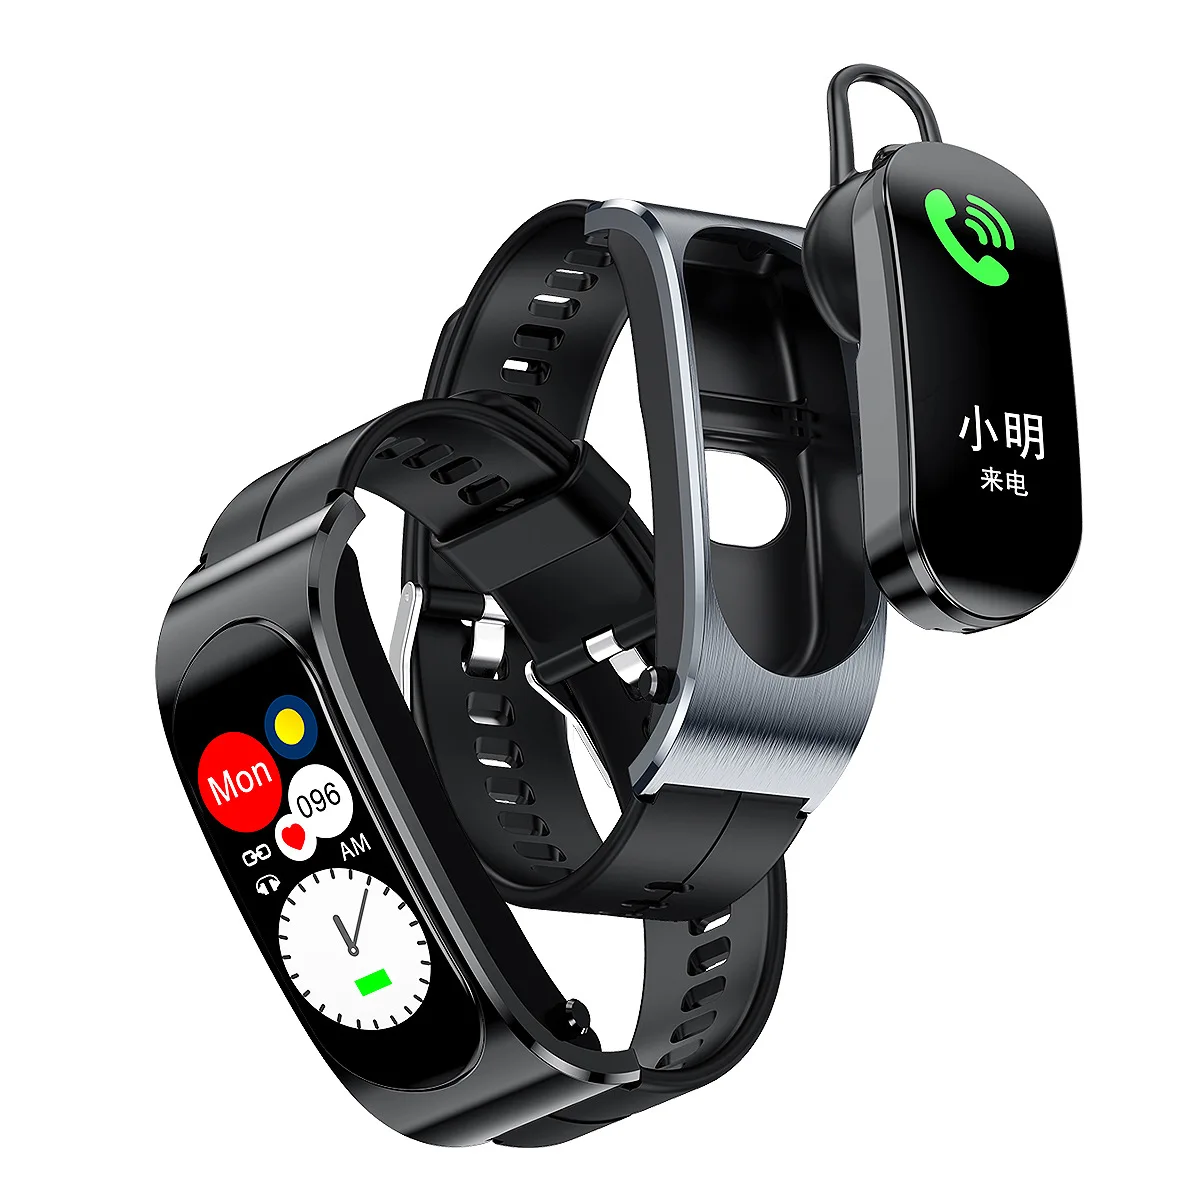 

F3 умные часы два в одном Bluetooth-гарнитура браслет сон Bluetooth беспроводная гарнитура беспроводной Вызов умный Браслет